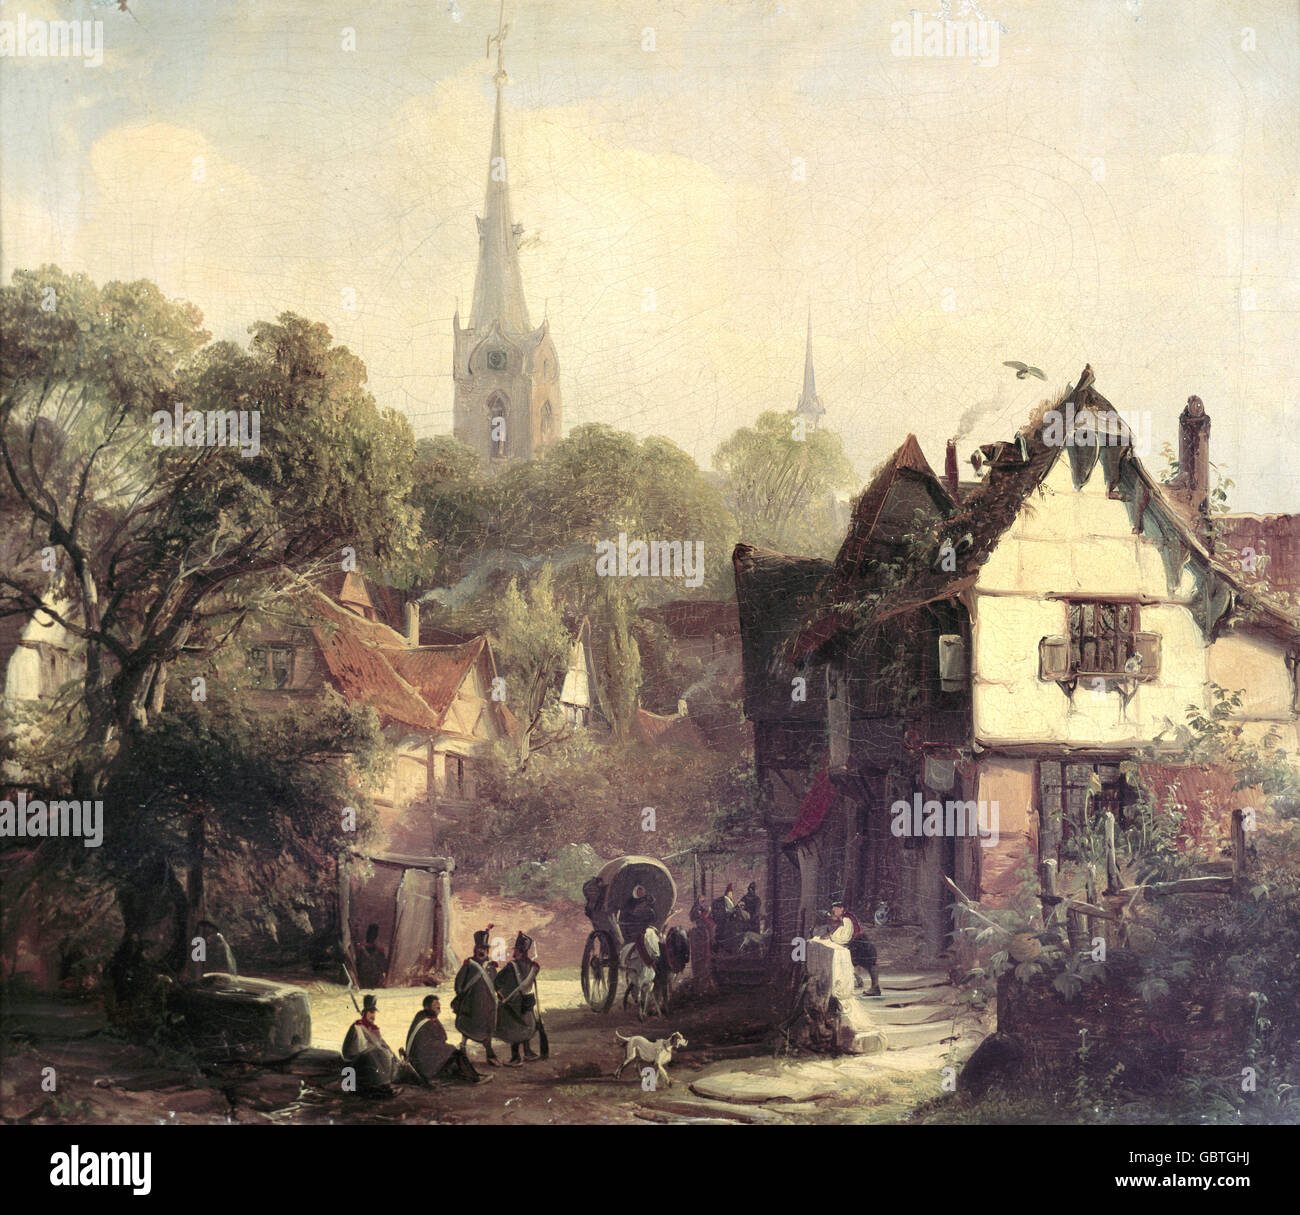 Bildende Kunst, Scheuren, Caspar Johann Nepomuk, (1810-1887), Malerei "Dorf", 1839, Öl auf Leinwand, 32,5 x 38,5 cm, Von der Heydt Museum, Wuppertal, Stockfoto